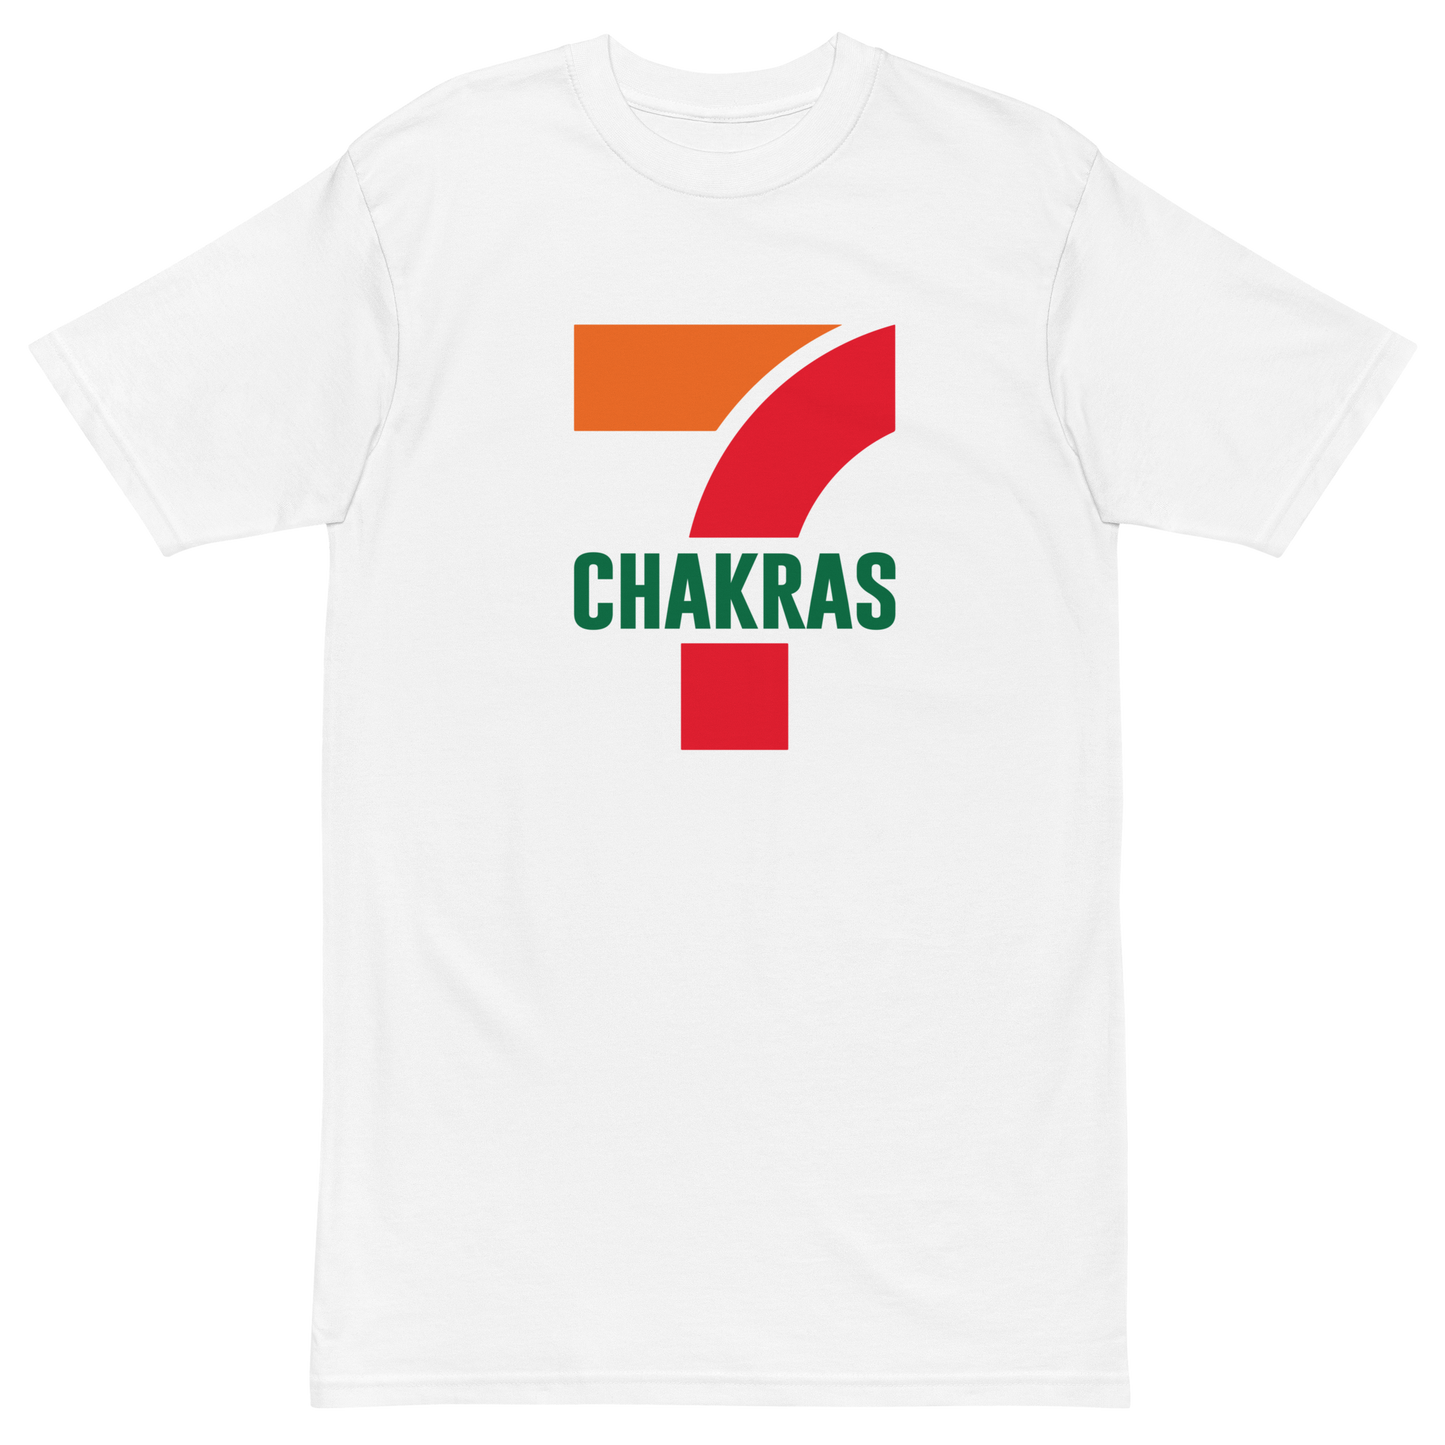 7 Chakras Premium Graphic Tee